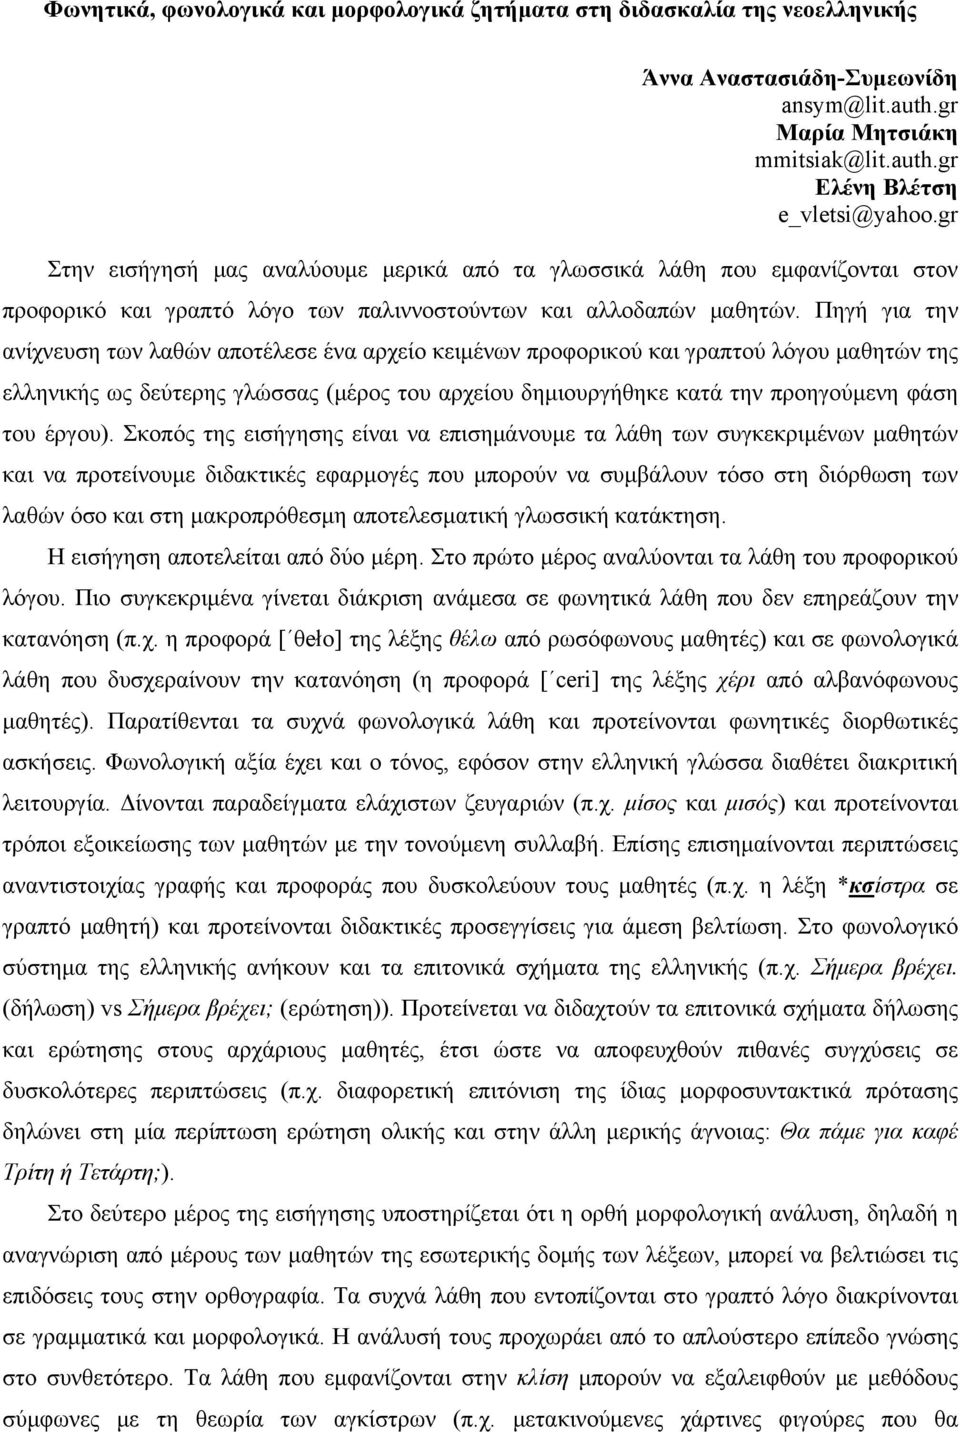 Πηγή για την ανίχνευση των λαθών αποτέλεσε ένα αρχείο κειμένων προφορικού και γραπτού λόγου μαθητών της ελληνικής ως δεύτερης γλώσσας (μέρος του αρχείου δημιουργήθηκε κατά την προηγούμενη φάση του